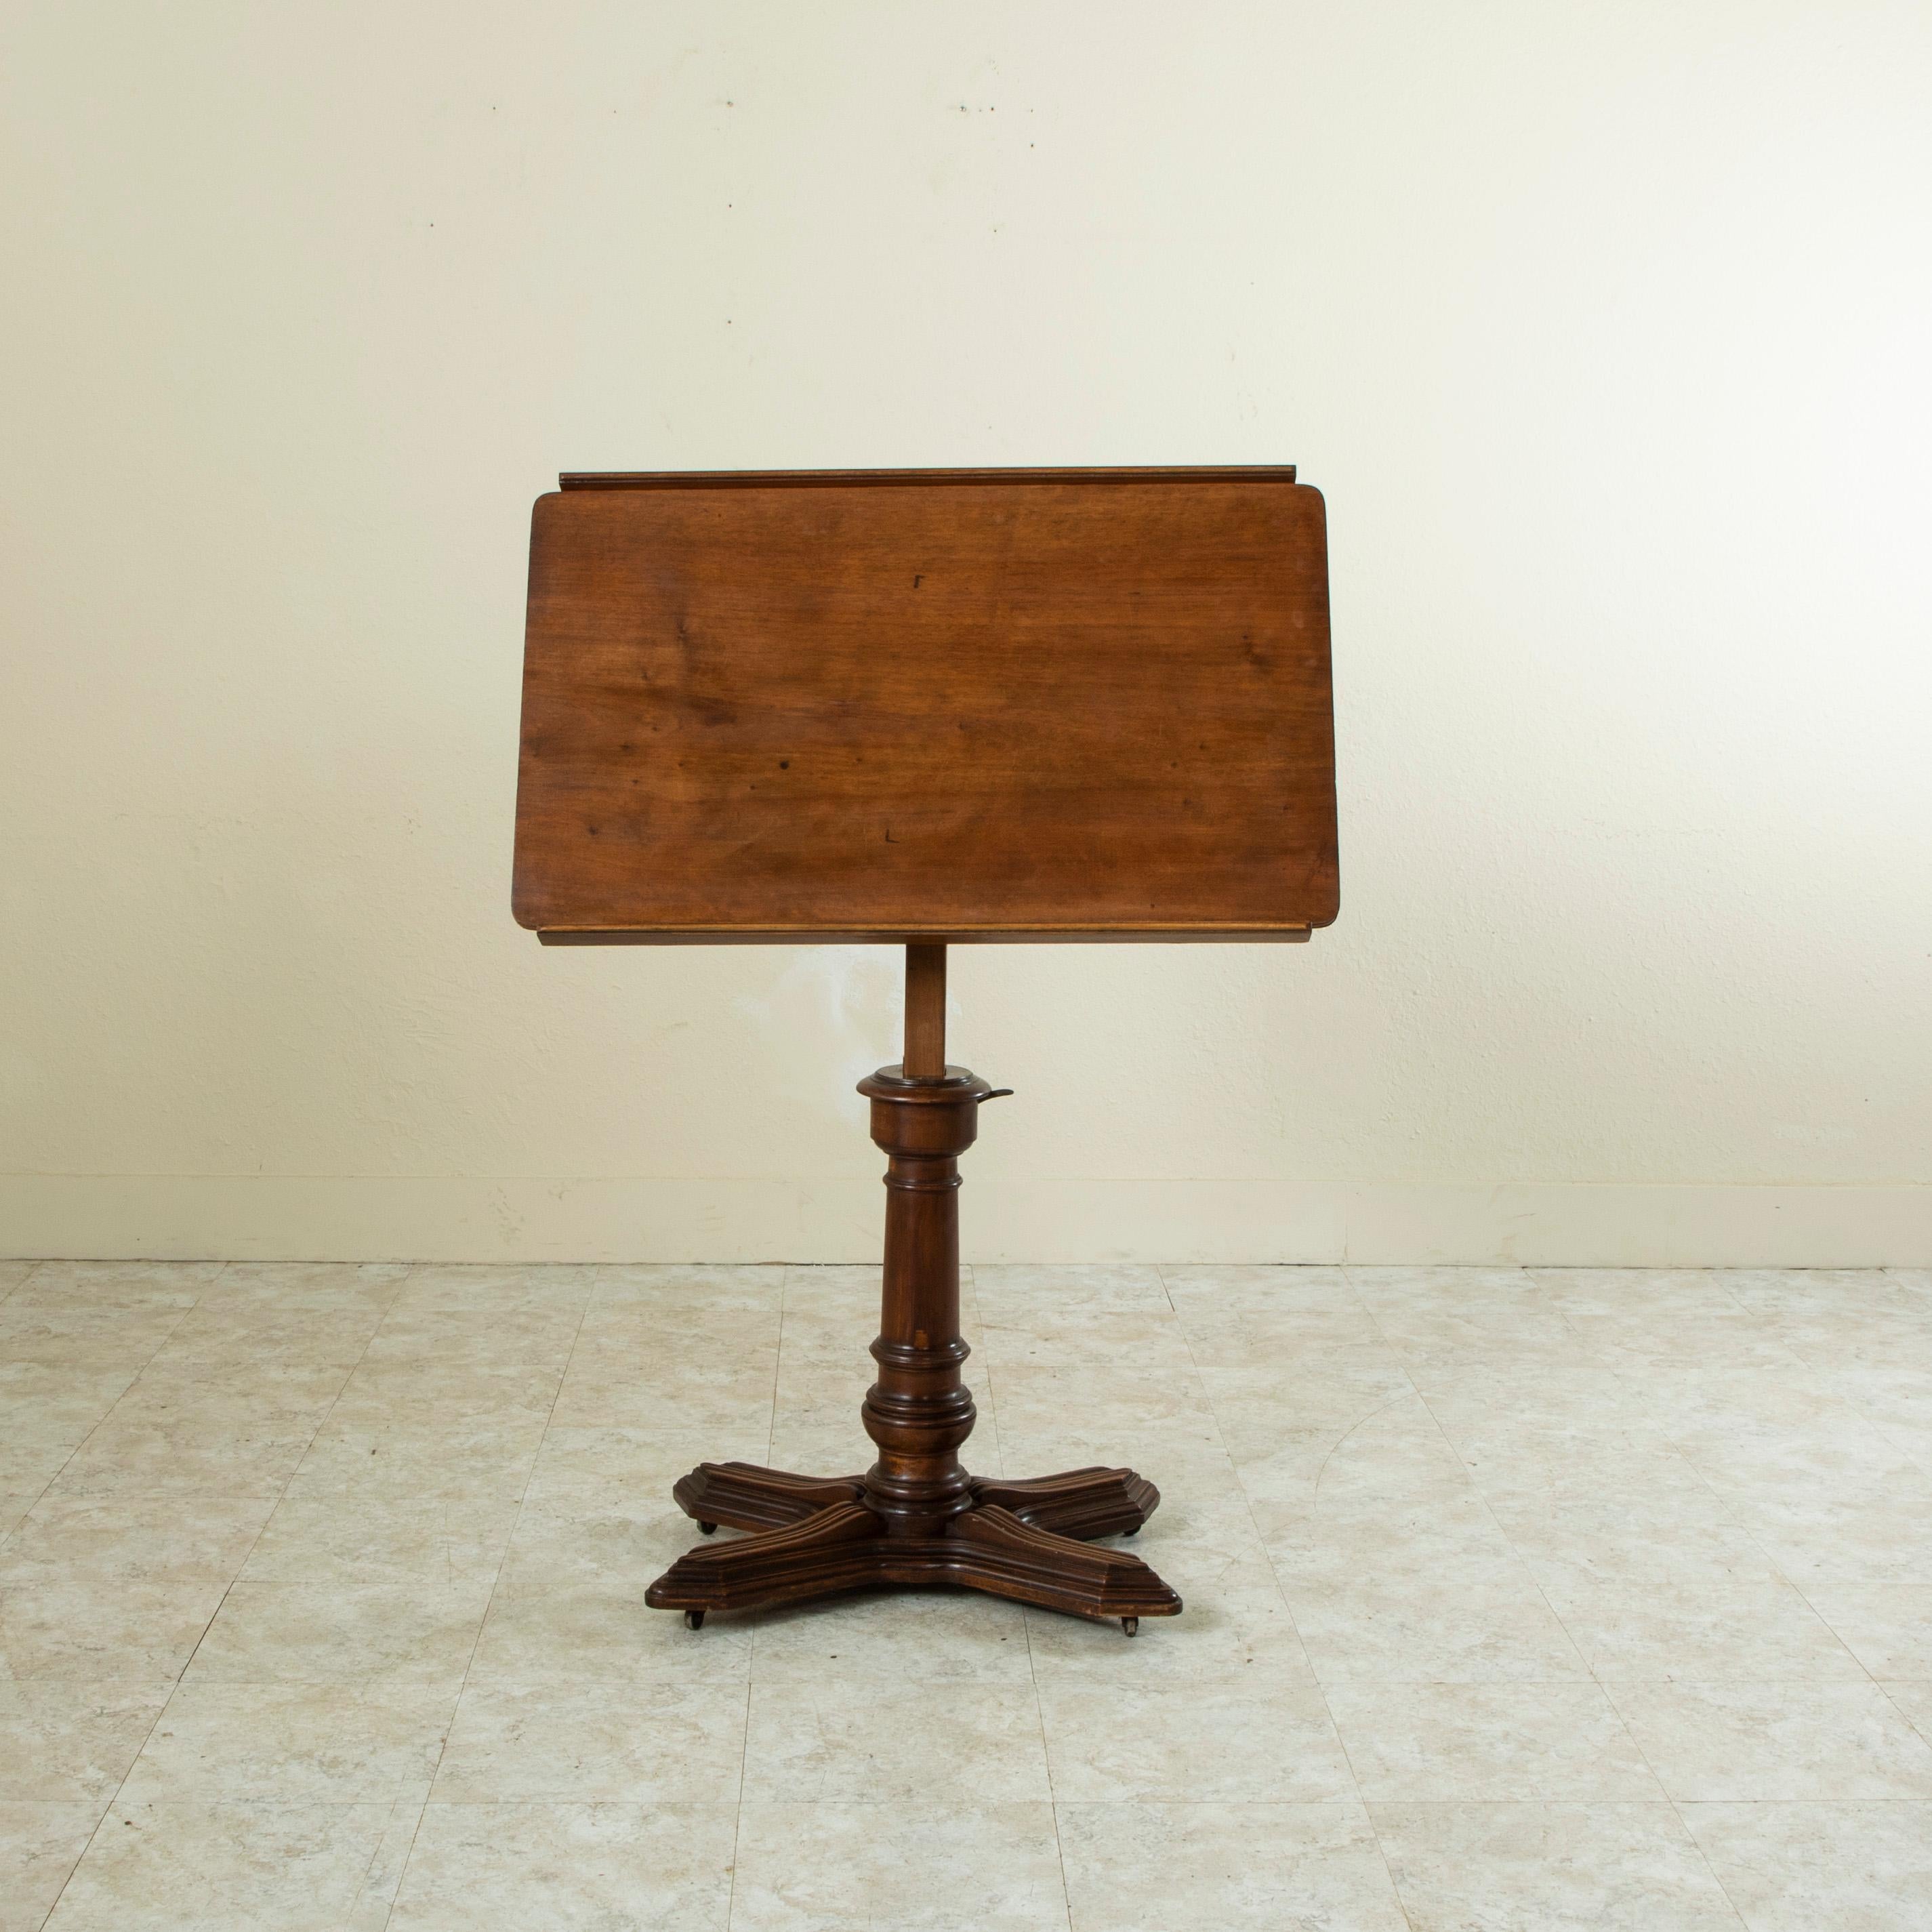 Dieser verstellbare Architektentisch aus französischem Nussbaumholz aus dem späten neunzehnten Jahrhundert trägt das Etikett des Herstellers, E. Chouanard. Die Tischplatte ist in Neigung, Höhe sowie rechter und linker Ausrichtung verstellbar und